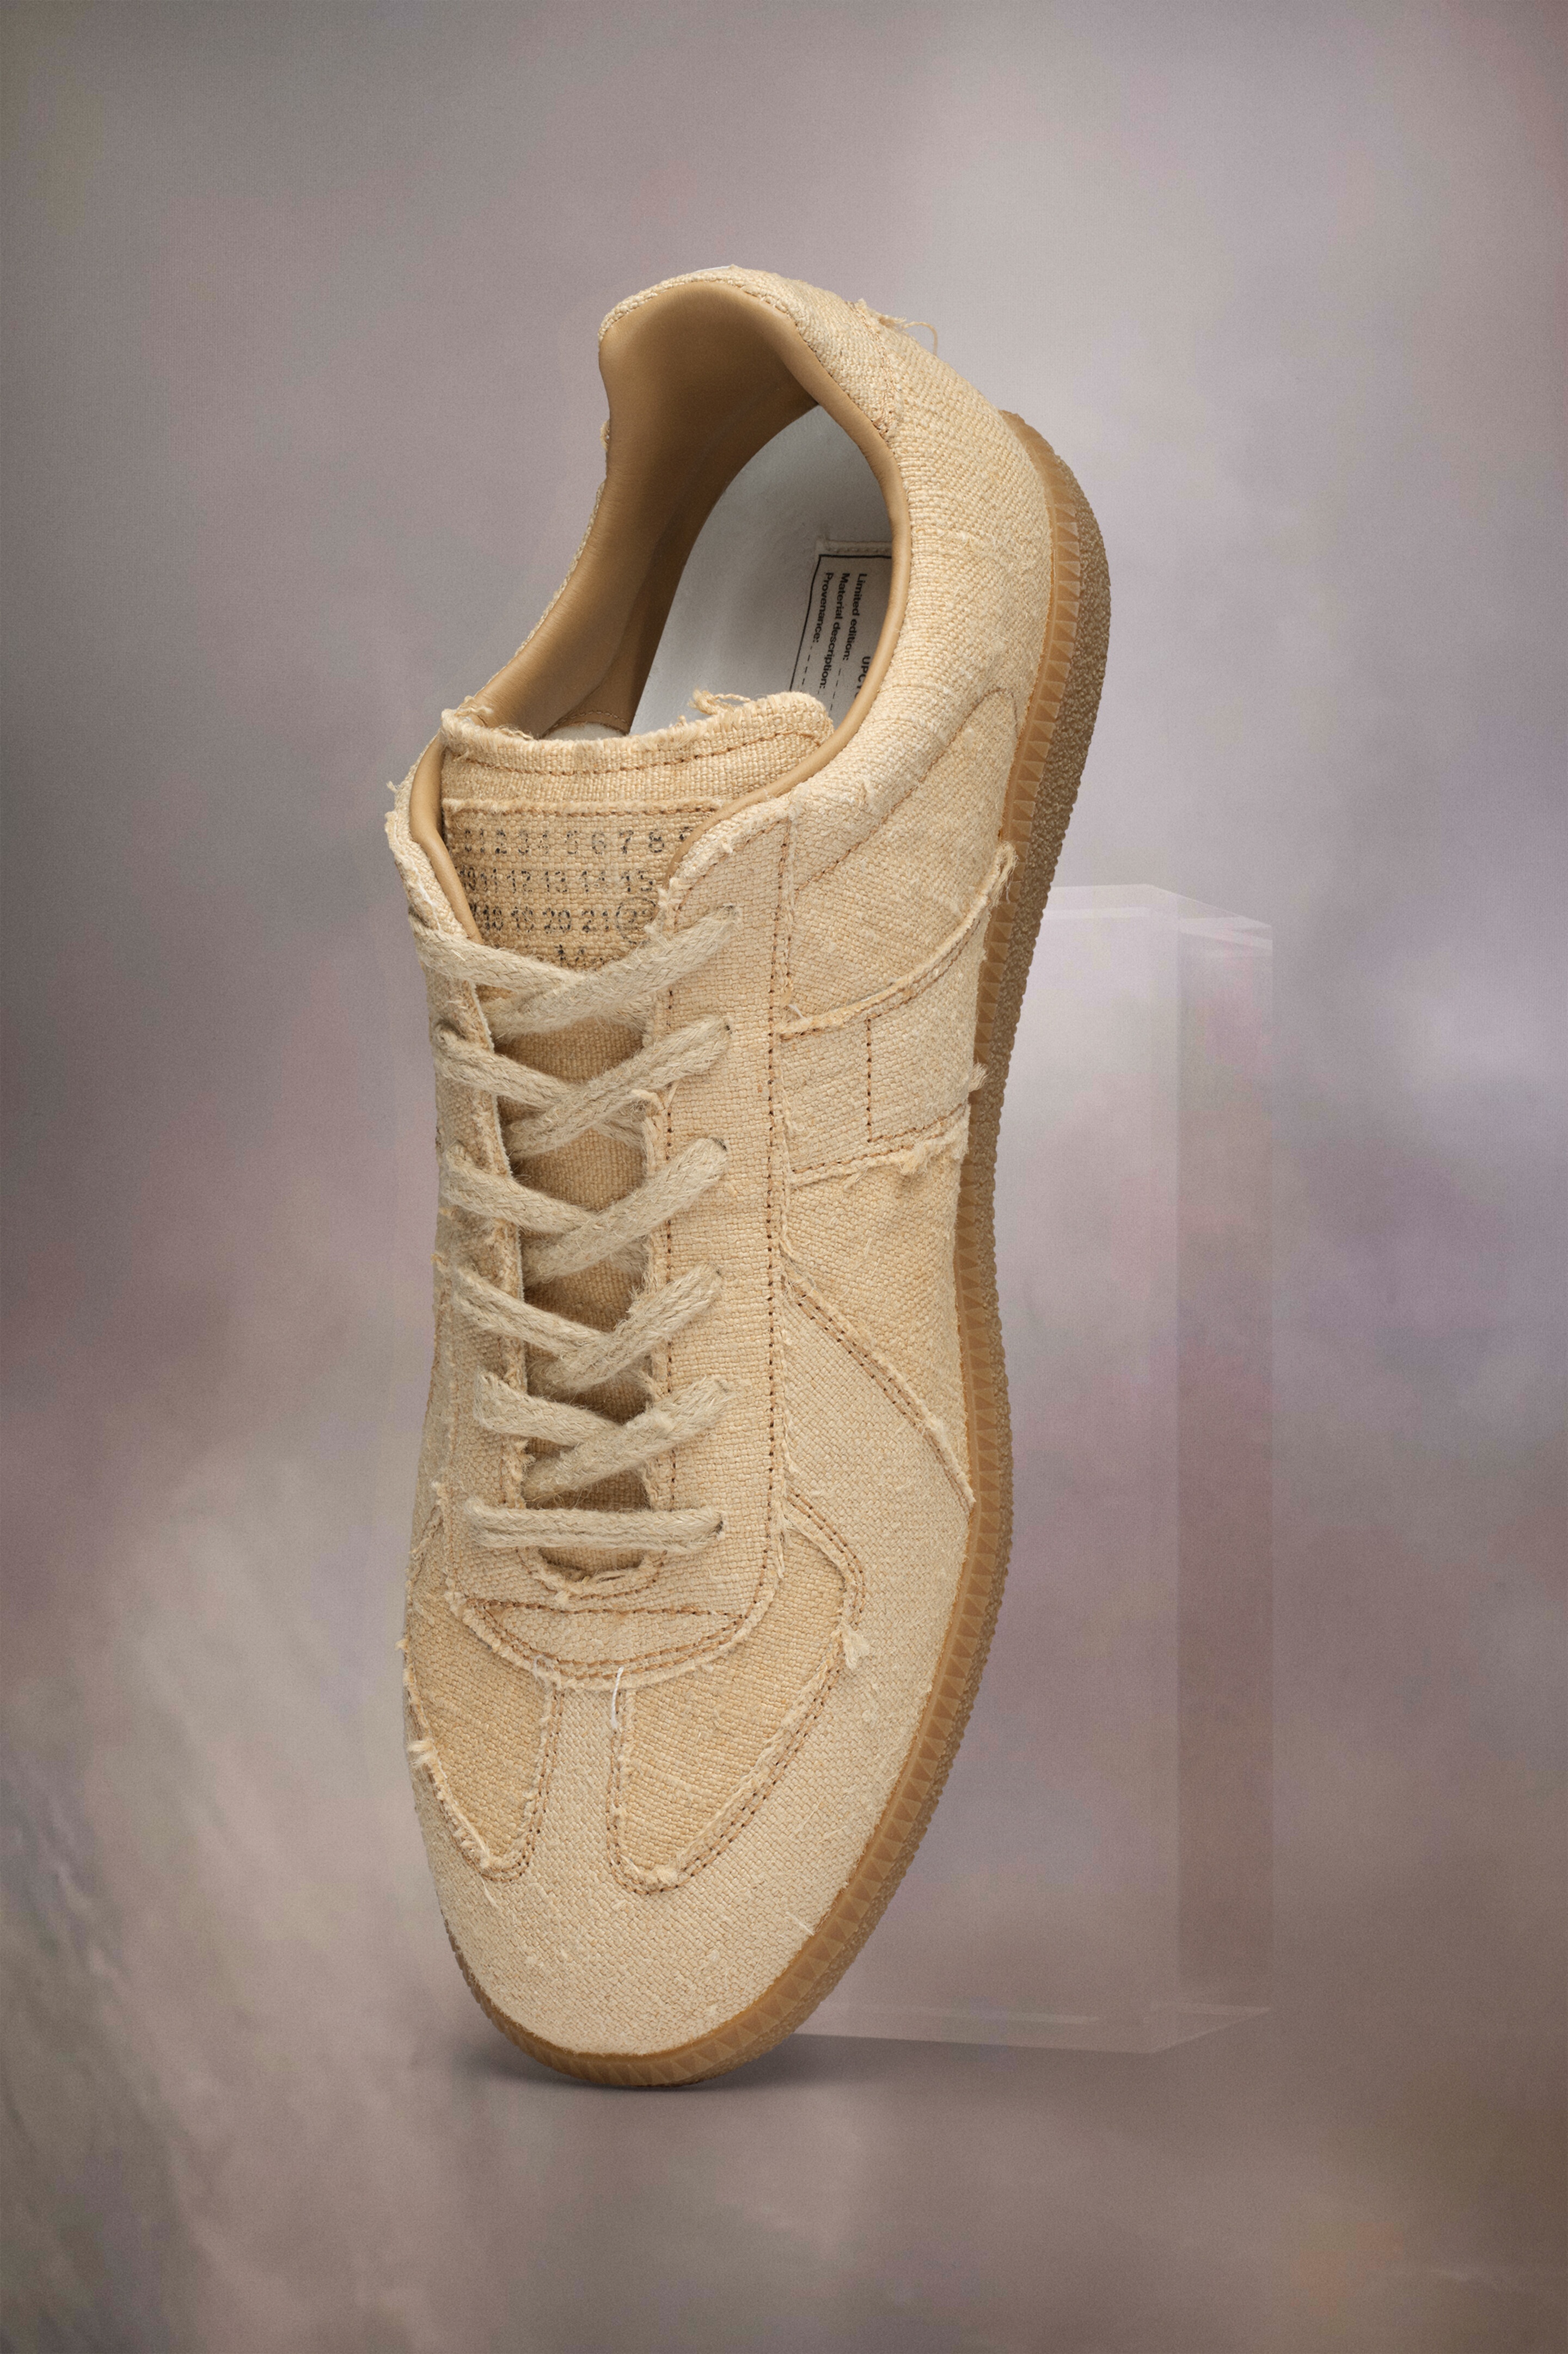 Replica sneakers - 1